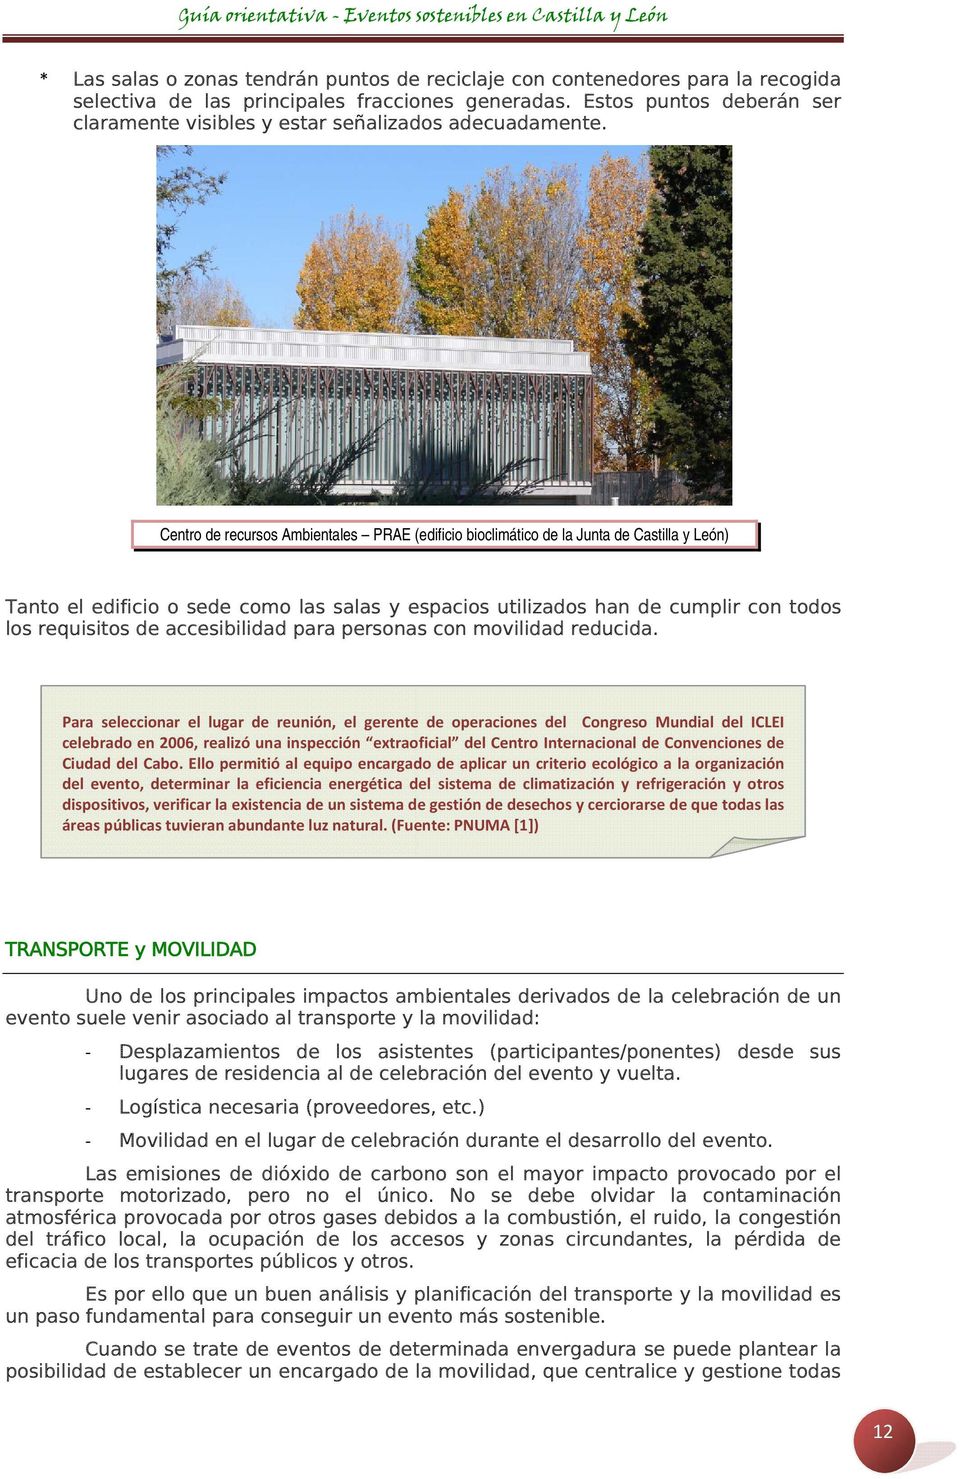 Centro de recursos Ambientales PRAE (edificio bioclimático de la Junta de Castilla y León) Tanto el edificio o sede como las salas y espacios utilizados han de cumplir con todos los requisitos de